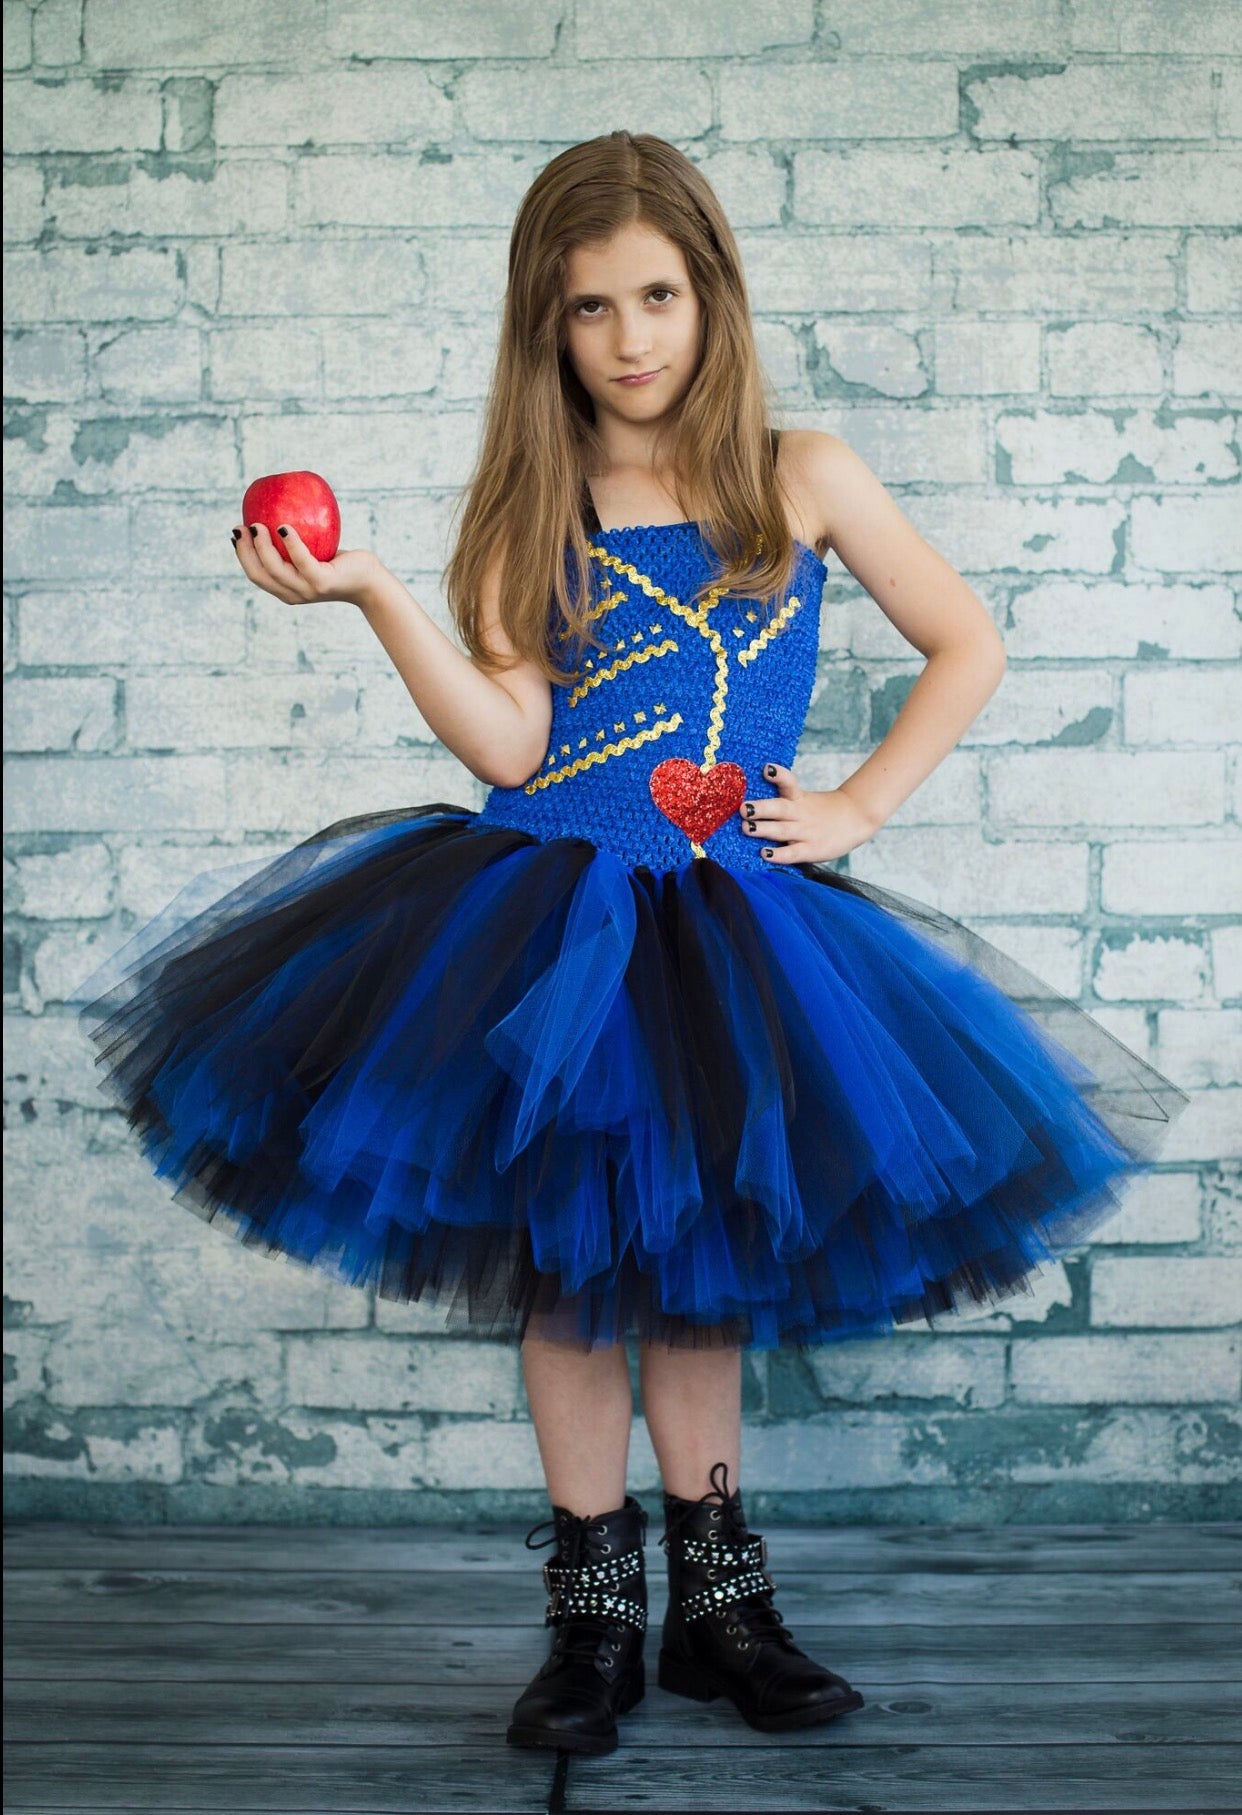 Handmade Descendants Uma Inspired Outfit for American Girl Doll